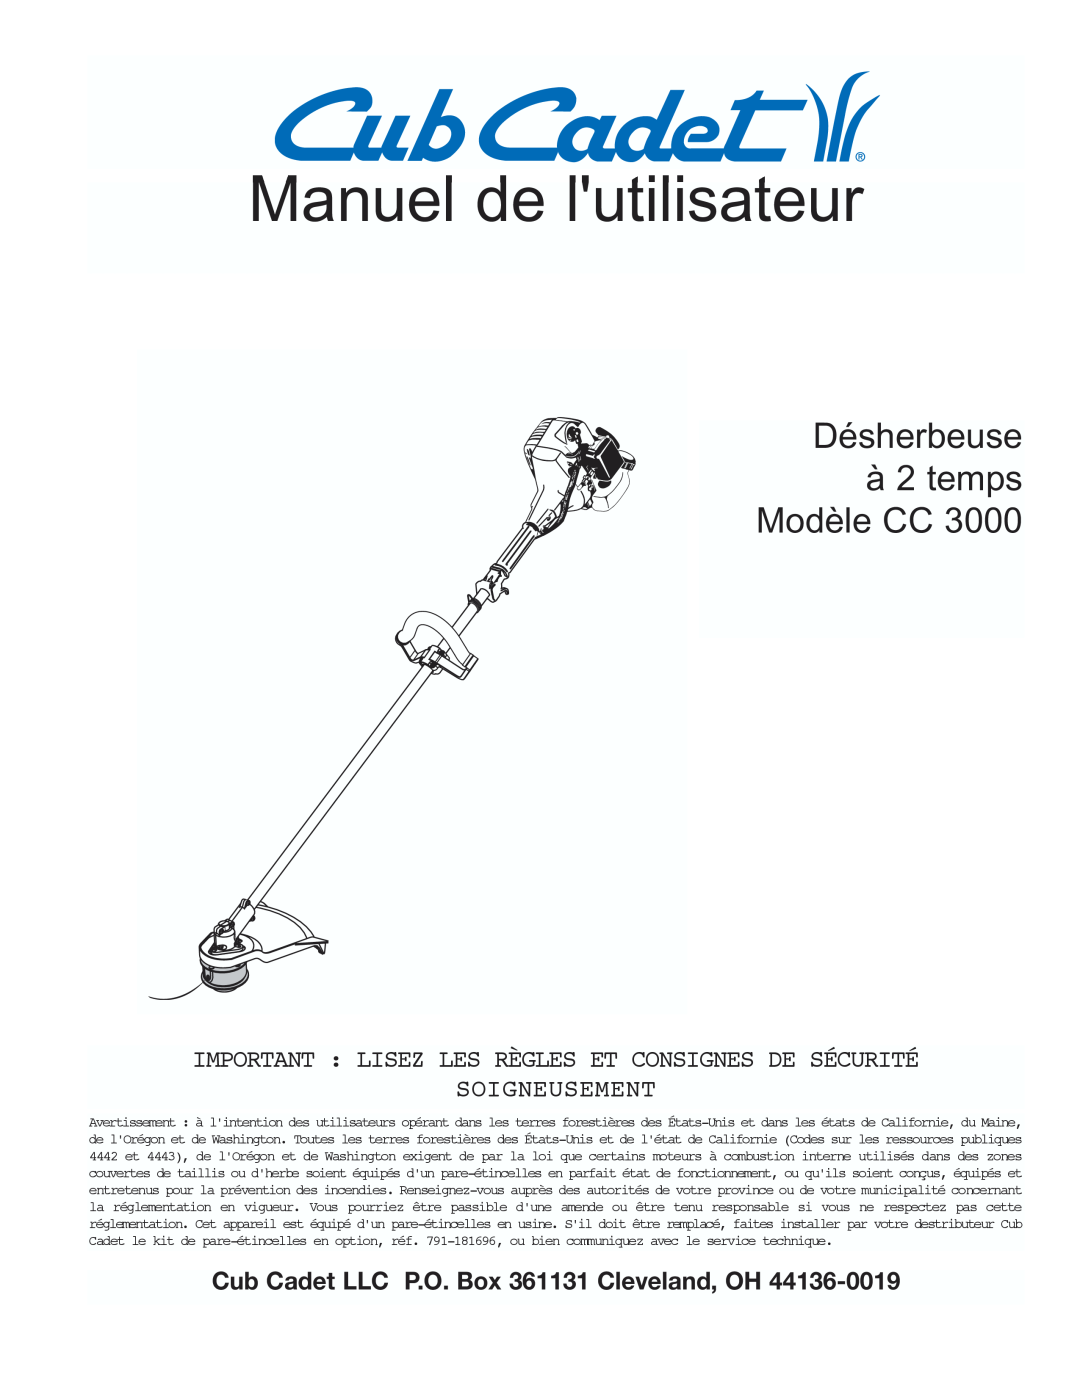 Cub Cadet CC3000 manual Manuel de lutilisateur, Désherbeuse à 2 temps Modèle CC, Soigneusement 